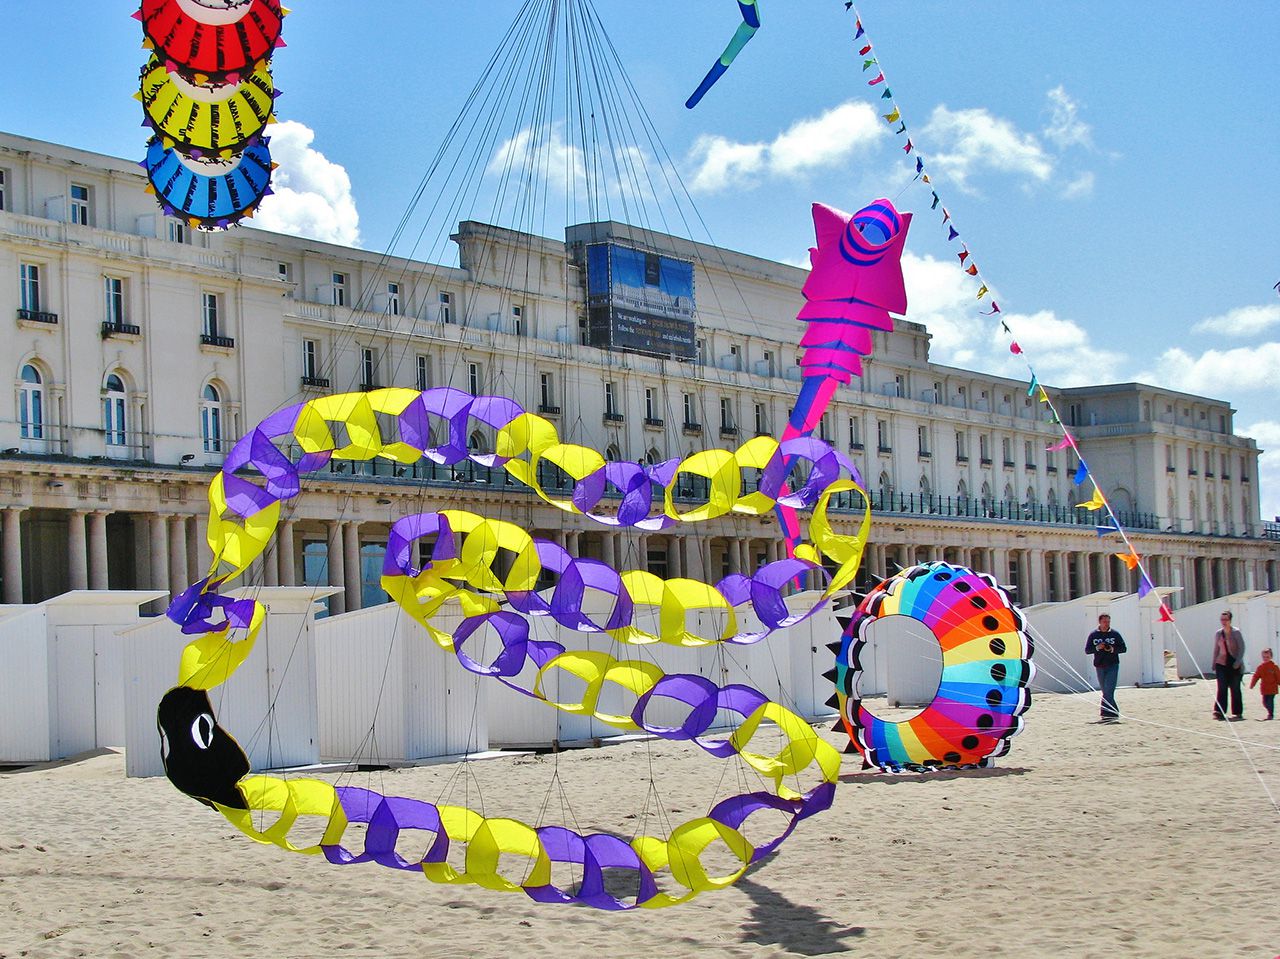 Ежегодное шоу воздушных змеев, проводящееся в Остенде - Остенде, Бельгия фото #32286